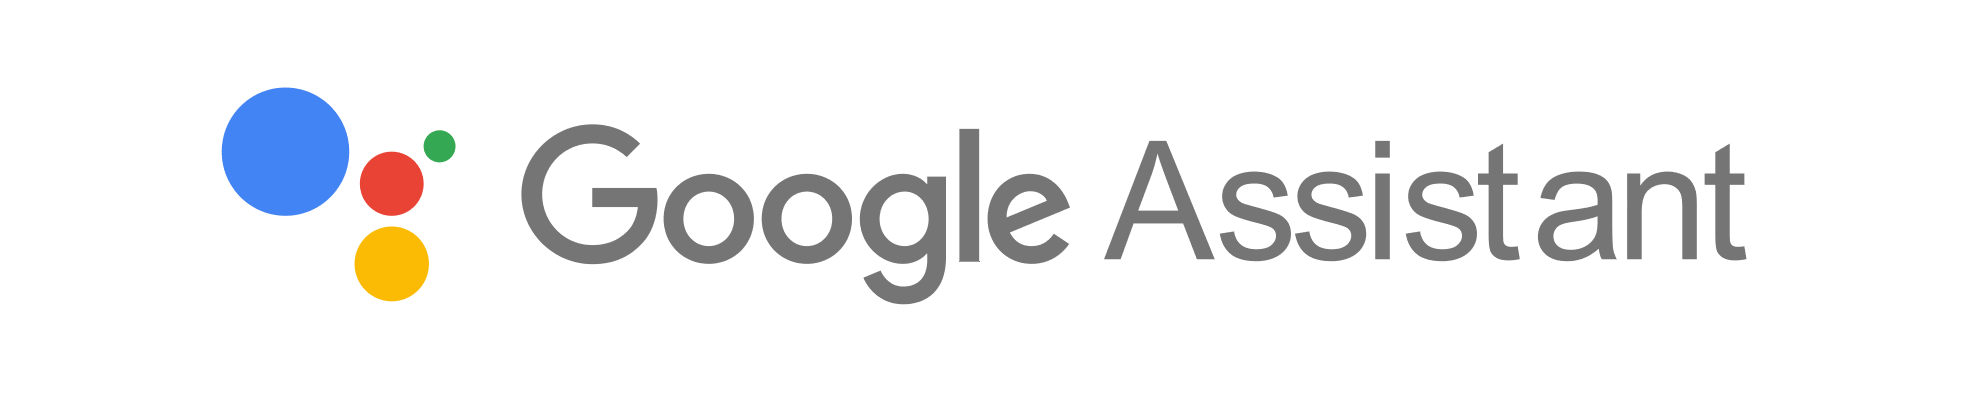 Google Assistant compatible